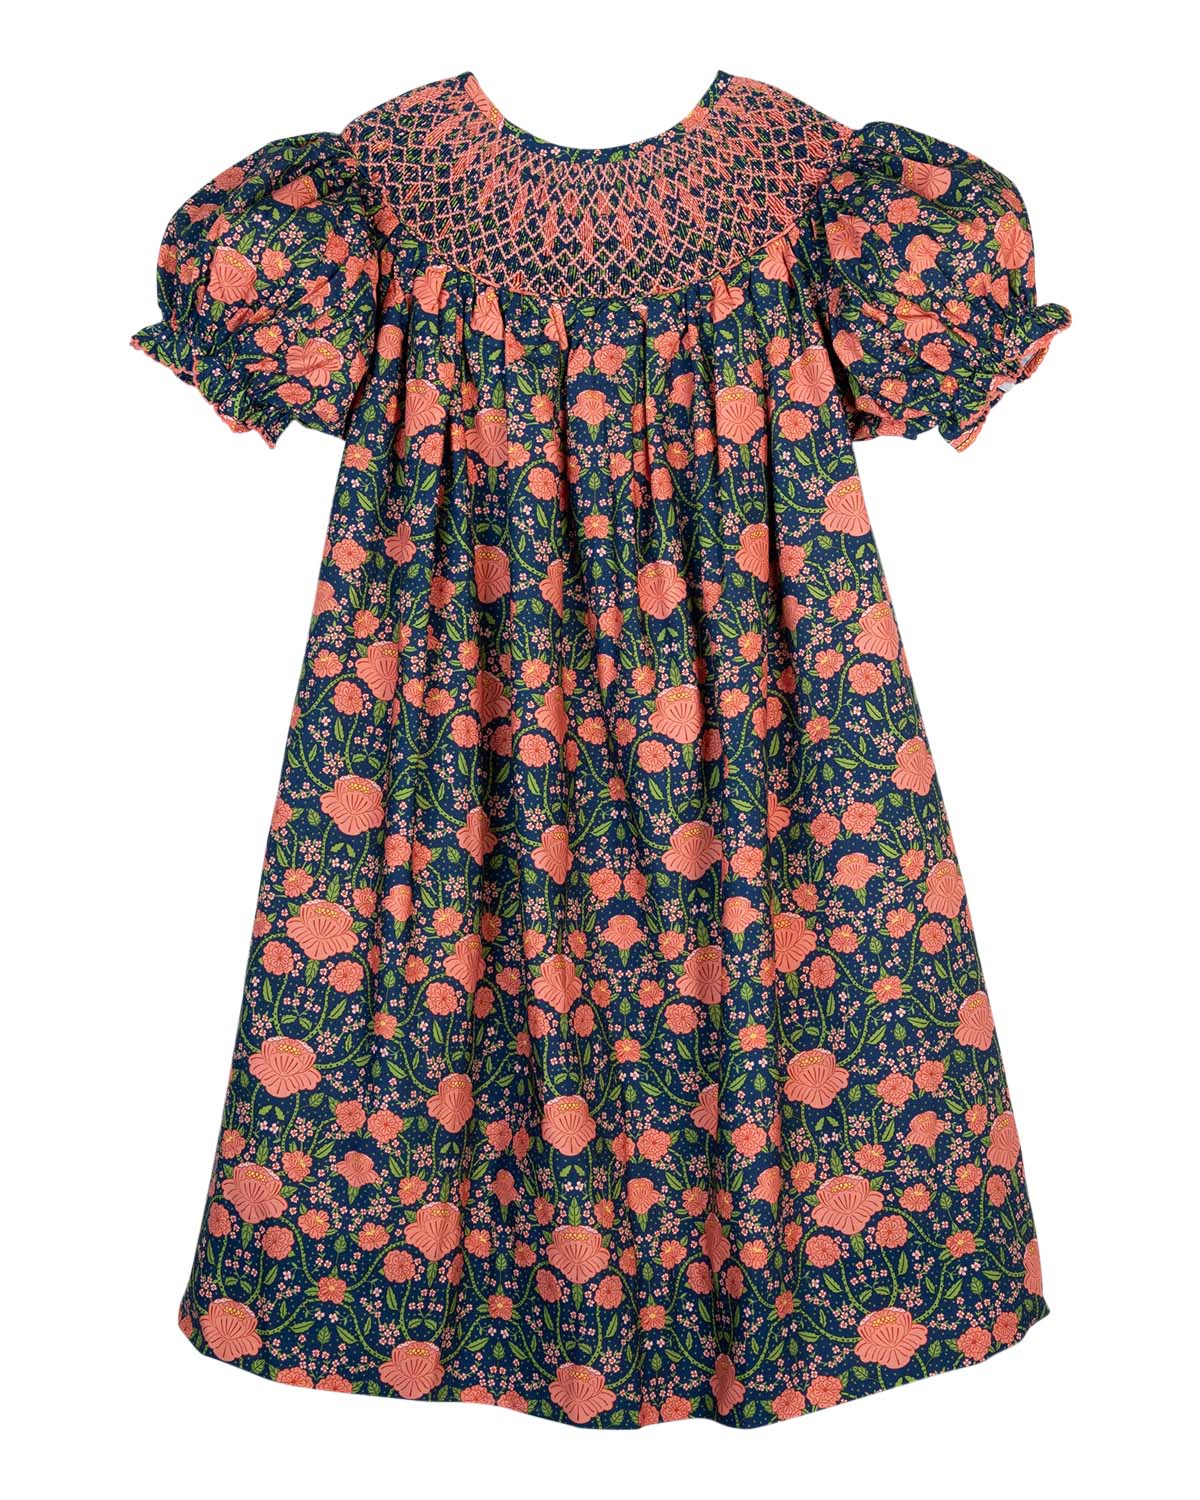 William Morris Inspired Smocked Navy Dress